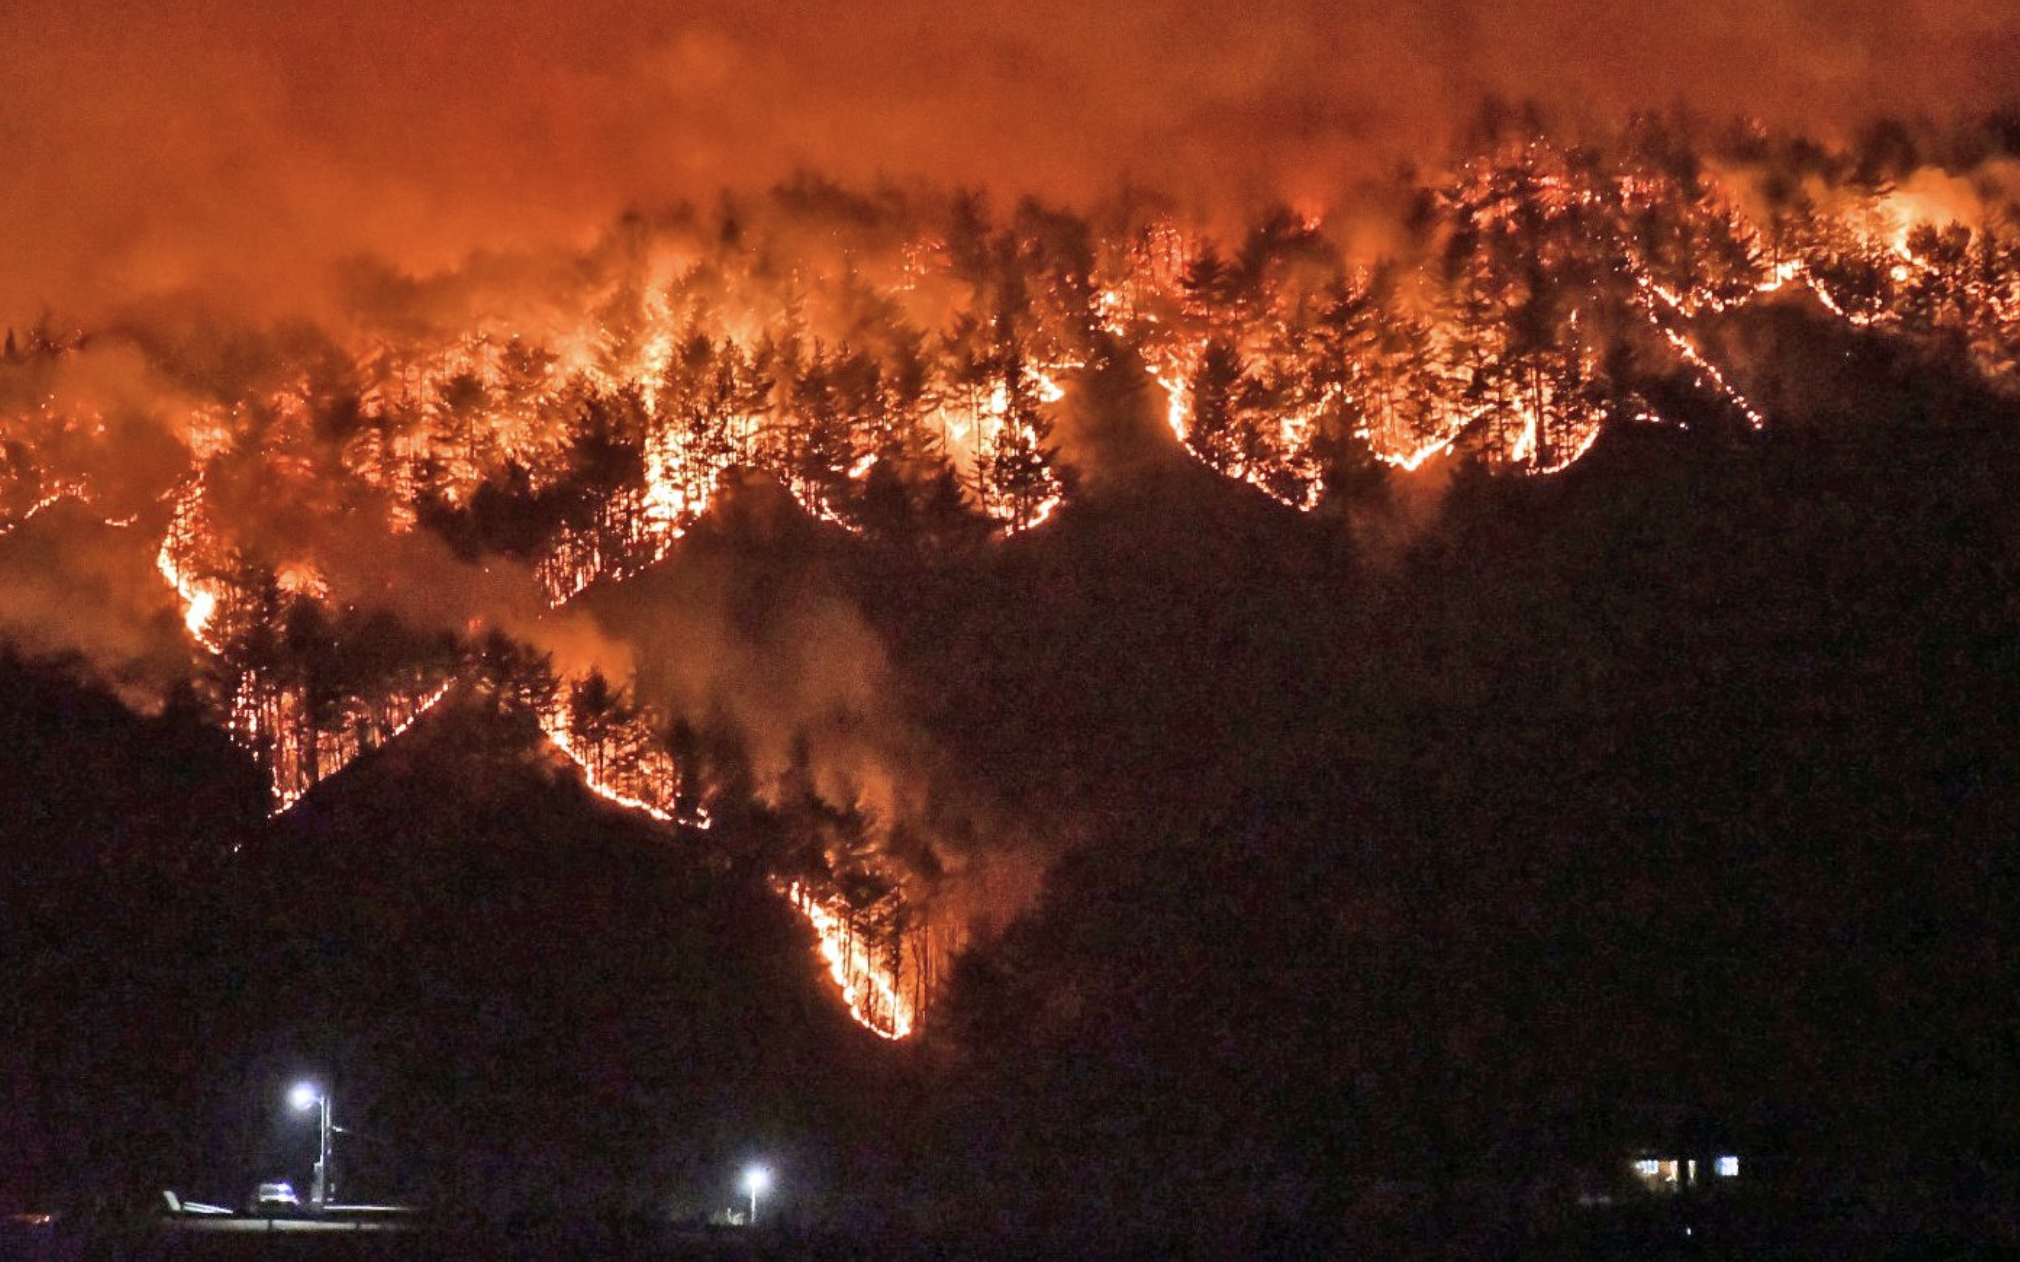 경남 울진에서 시작한 산불이 삼척시로 번진 모습 
산불이 산 전체를 뒤덥고 하늘이 주황색과 붉은색으로 물들어있다.